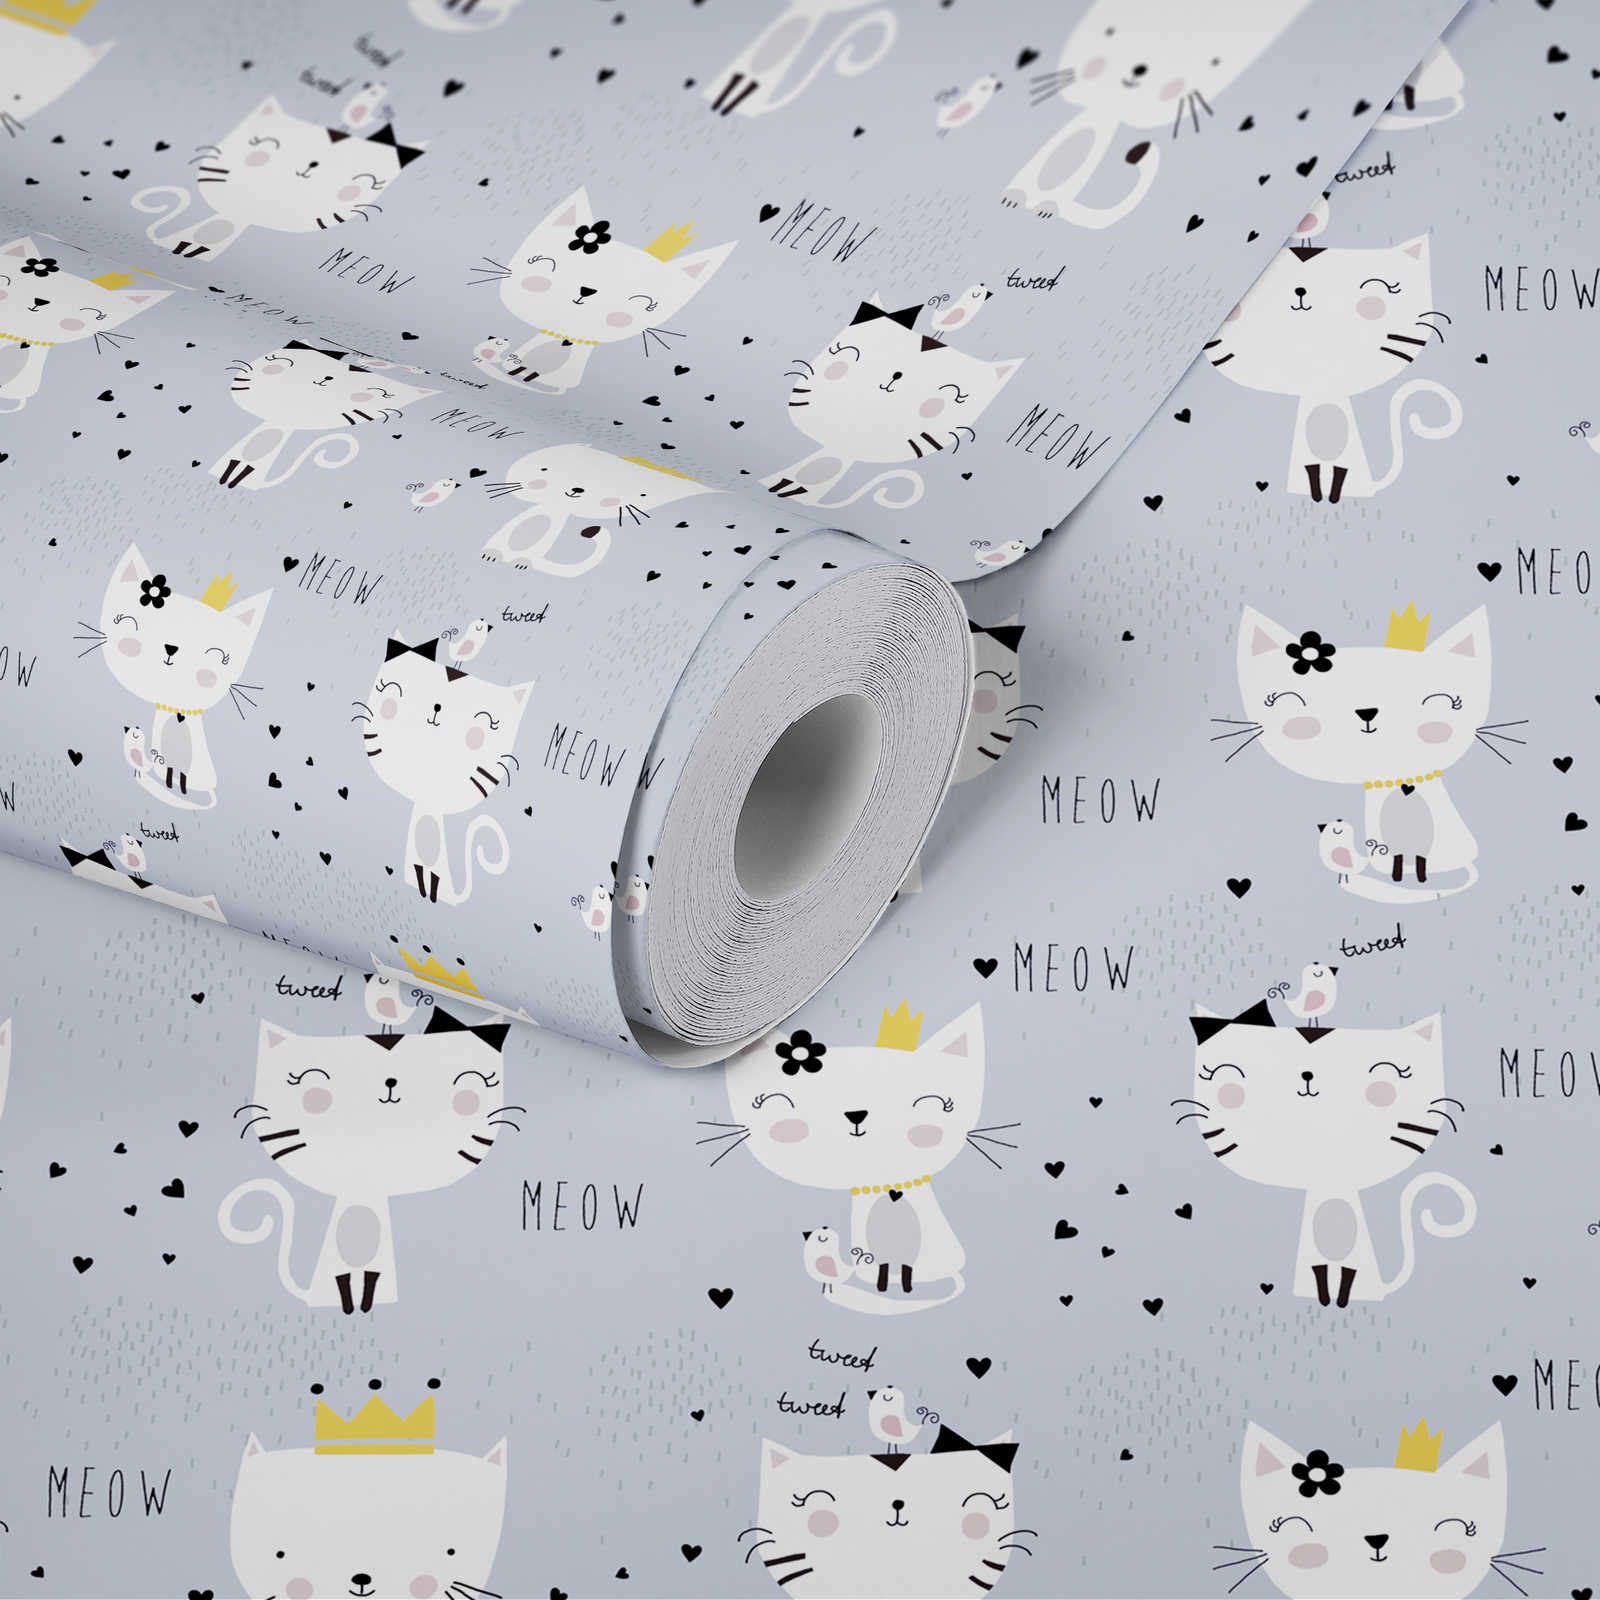             Papier peint chambre enfant motif chat - gris, blanc, noir
        